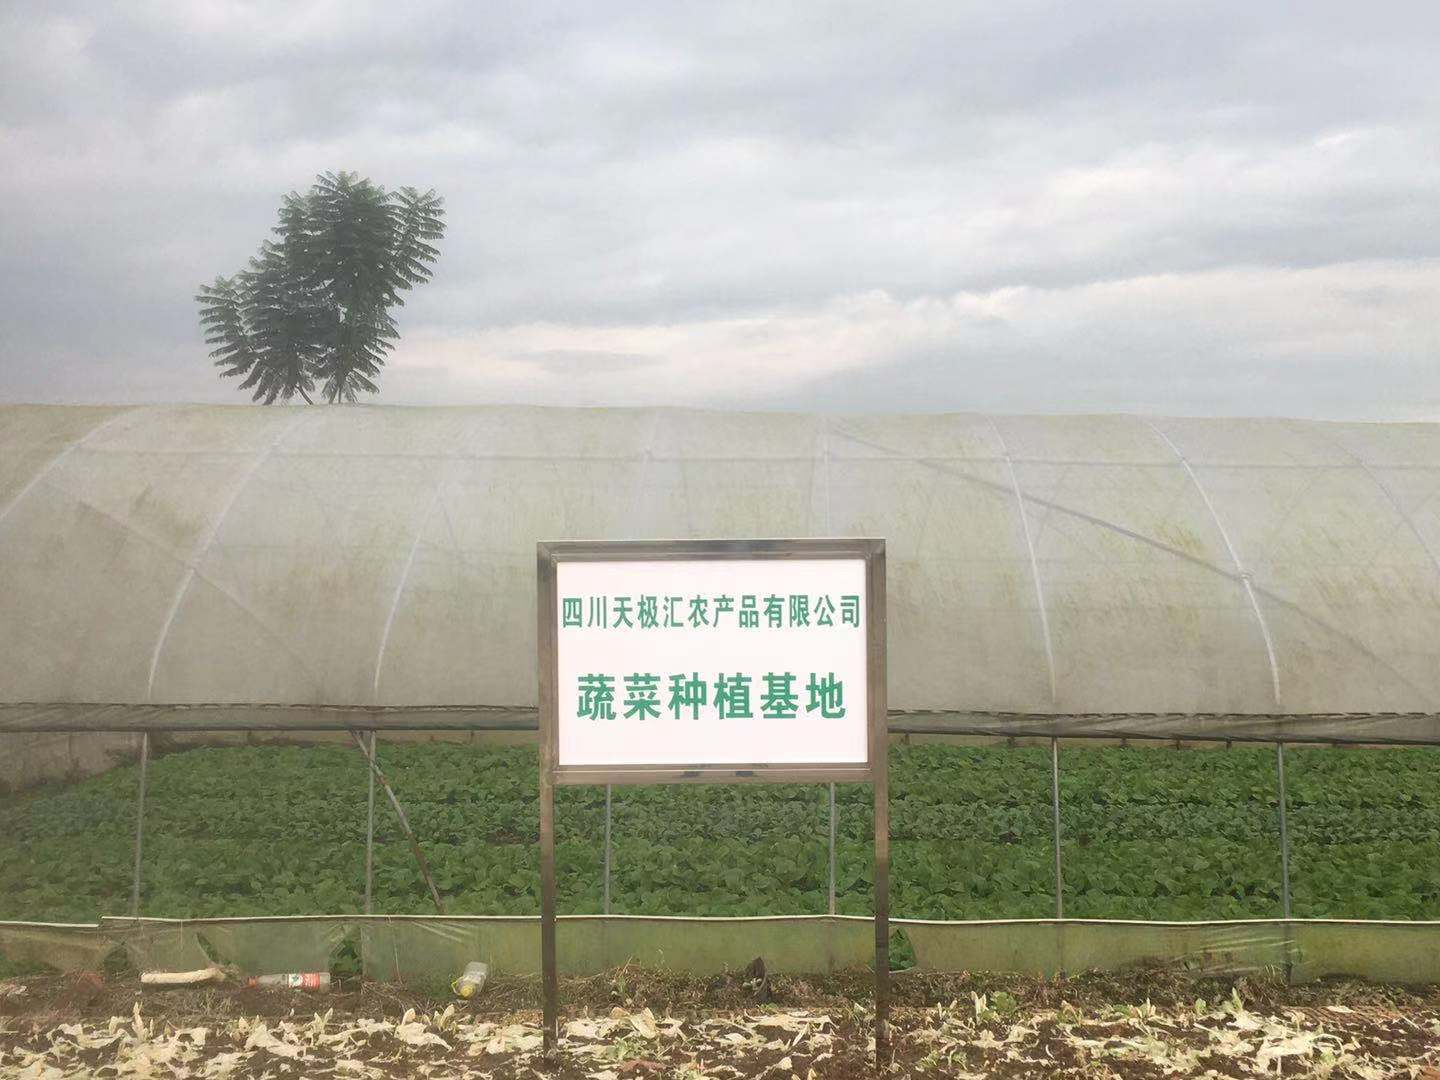 成都鹏宇农业公司蔬菜种植基地